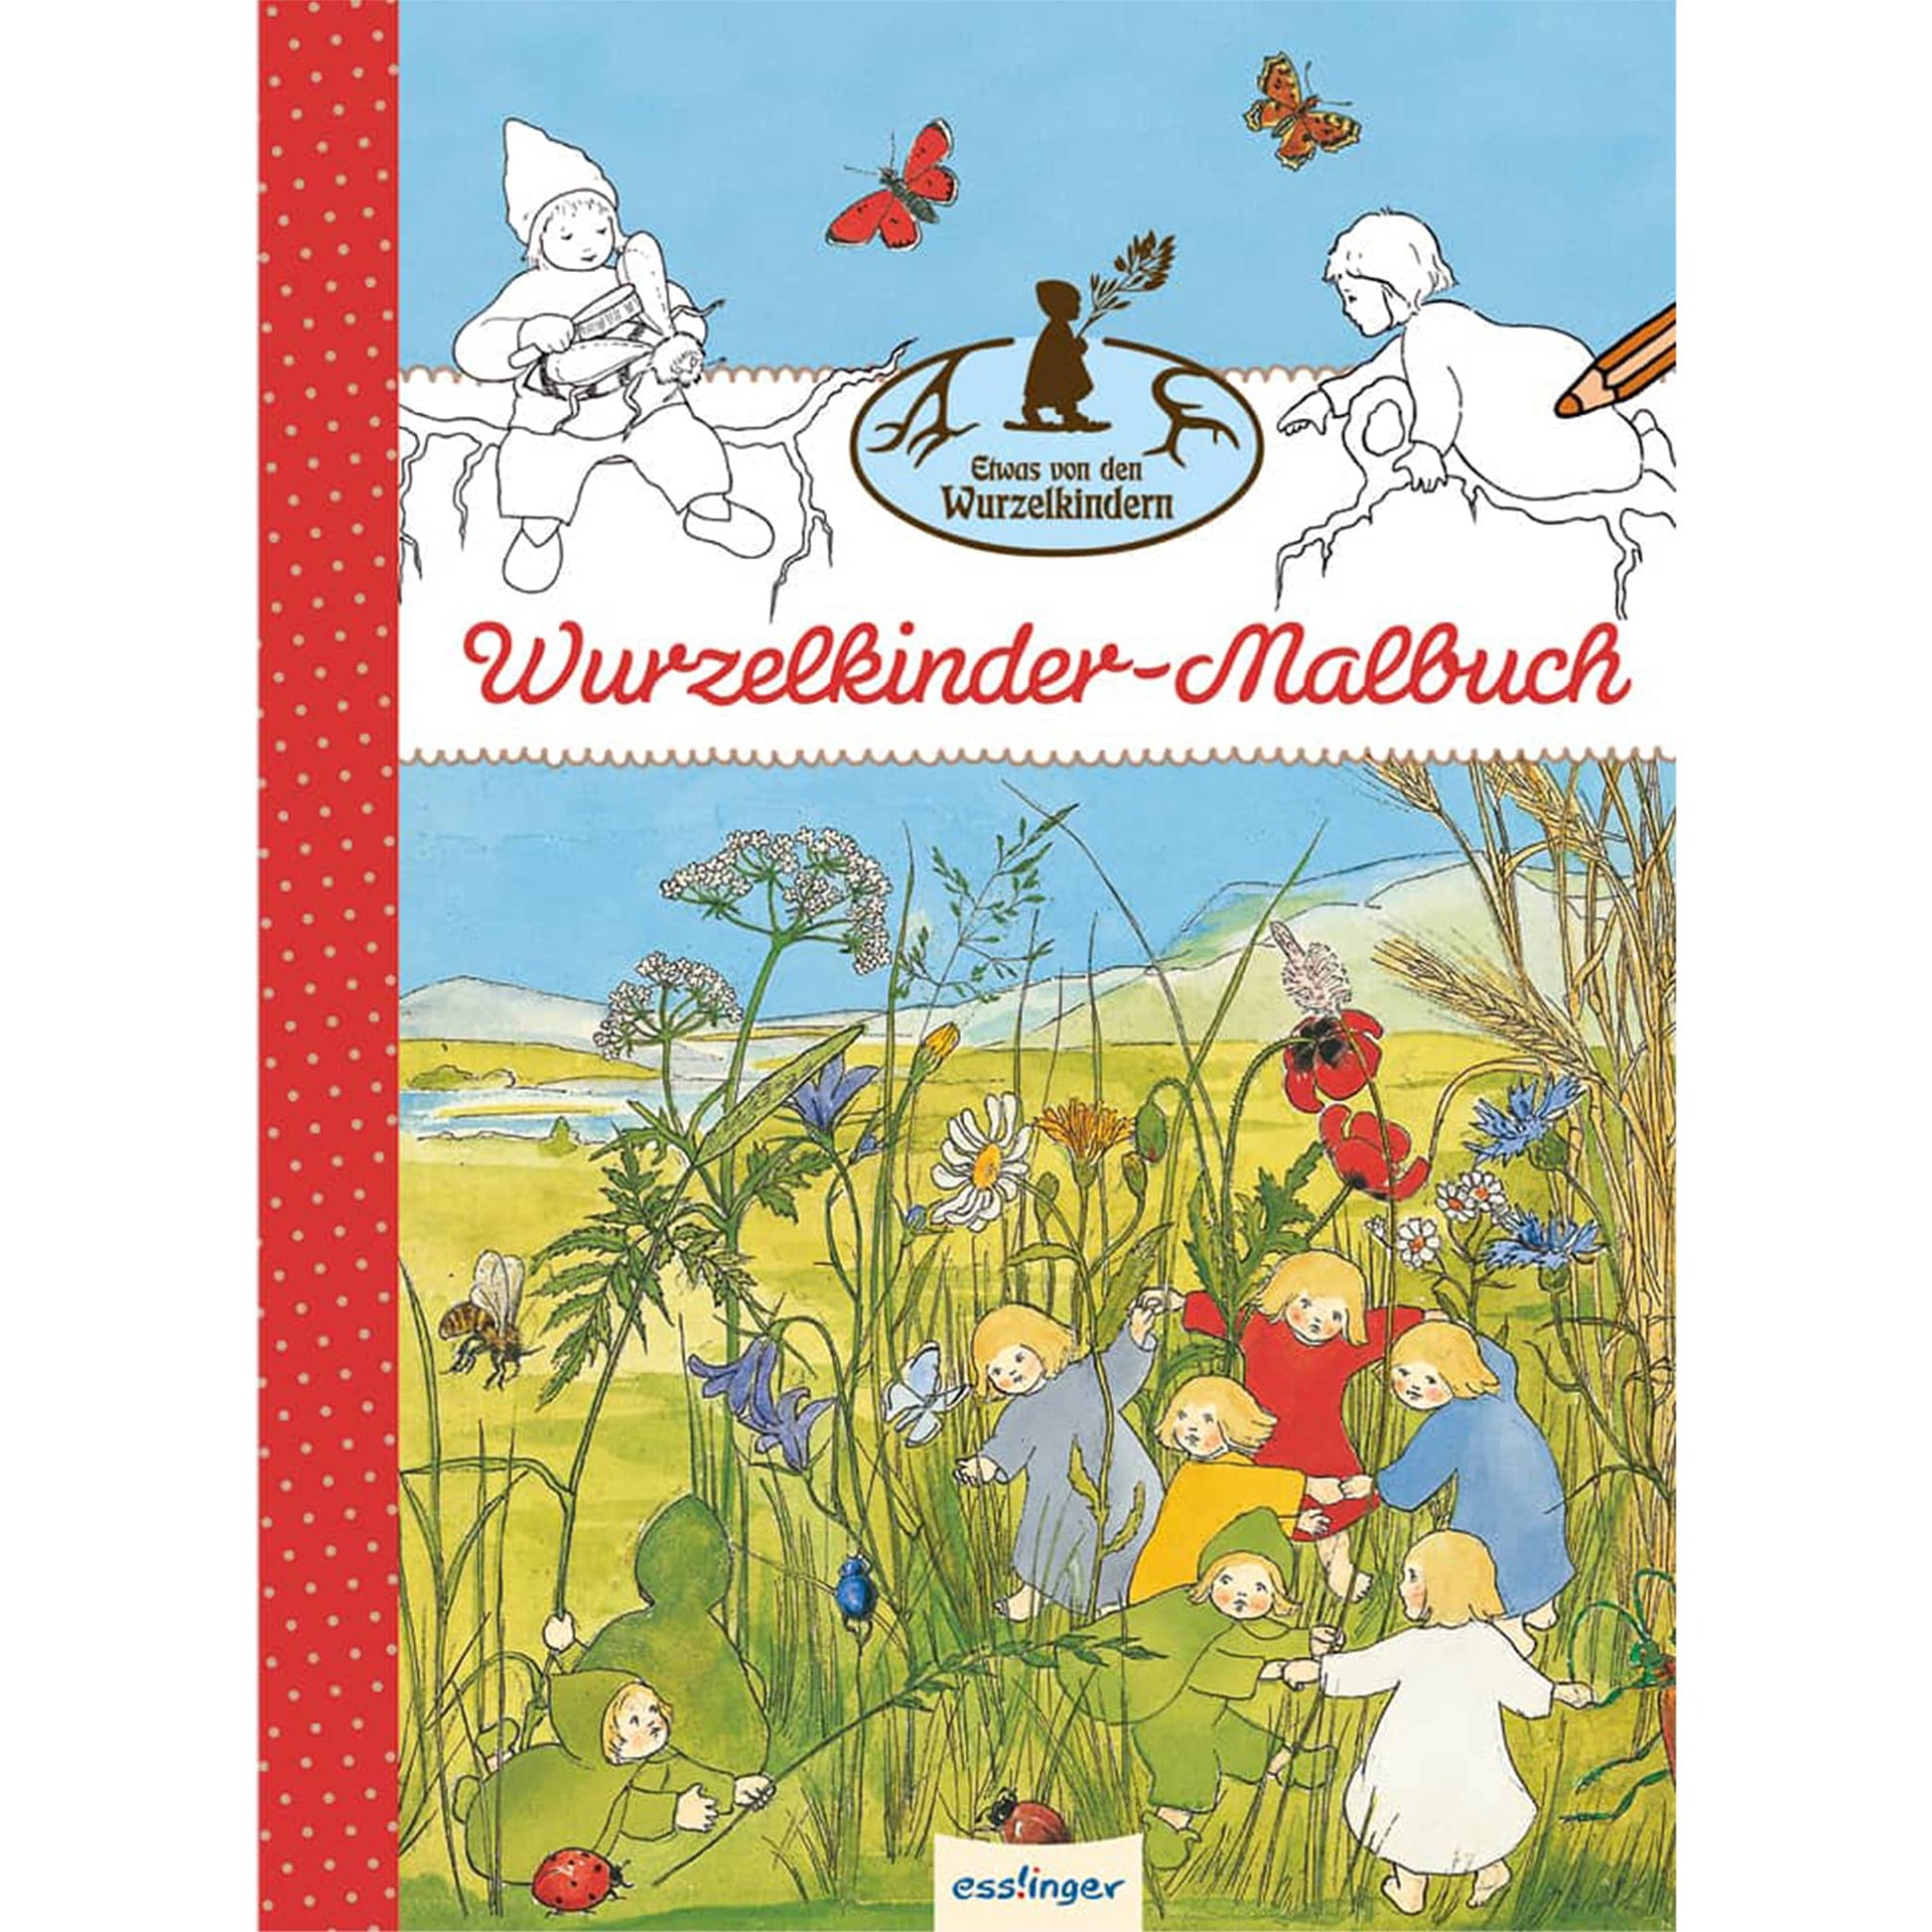 Wurzelkinder-Malbuch, perfekt für kreative Stunden und das Entdecken der Natur durch Malen. Ideal für Kinder und Fans der Wurzelkinder-Geschichten.